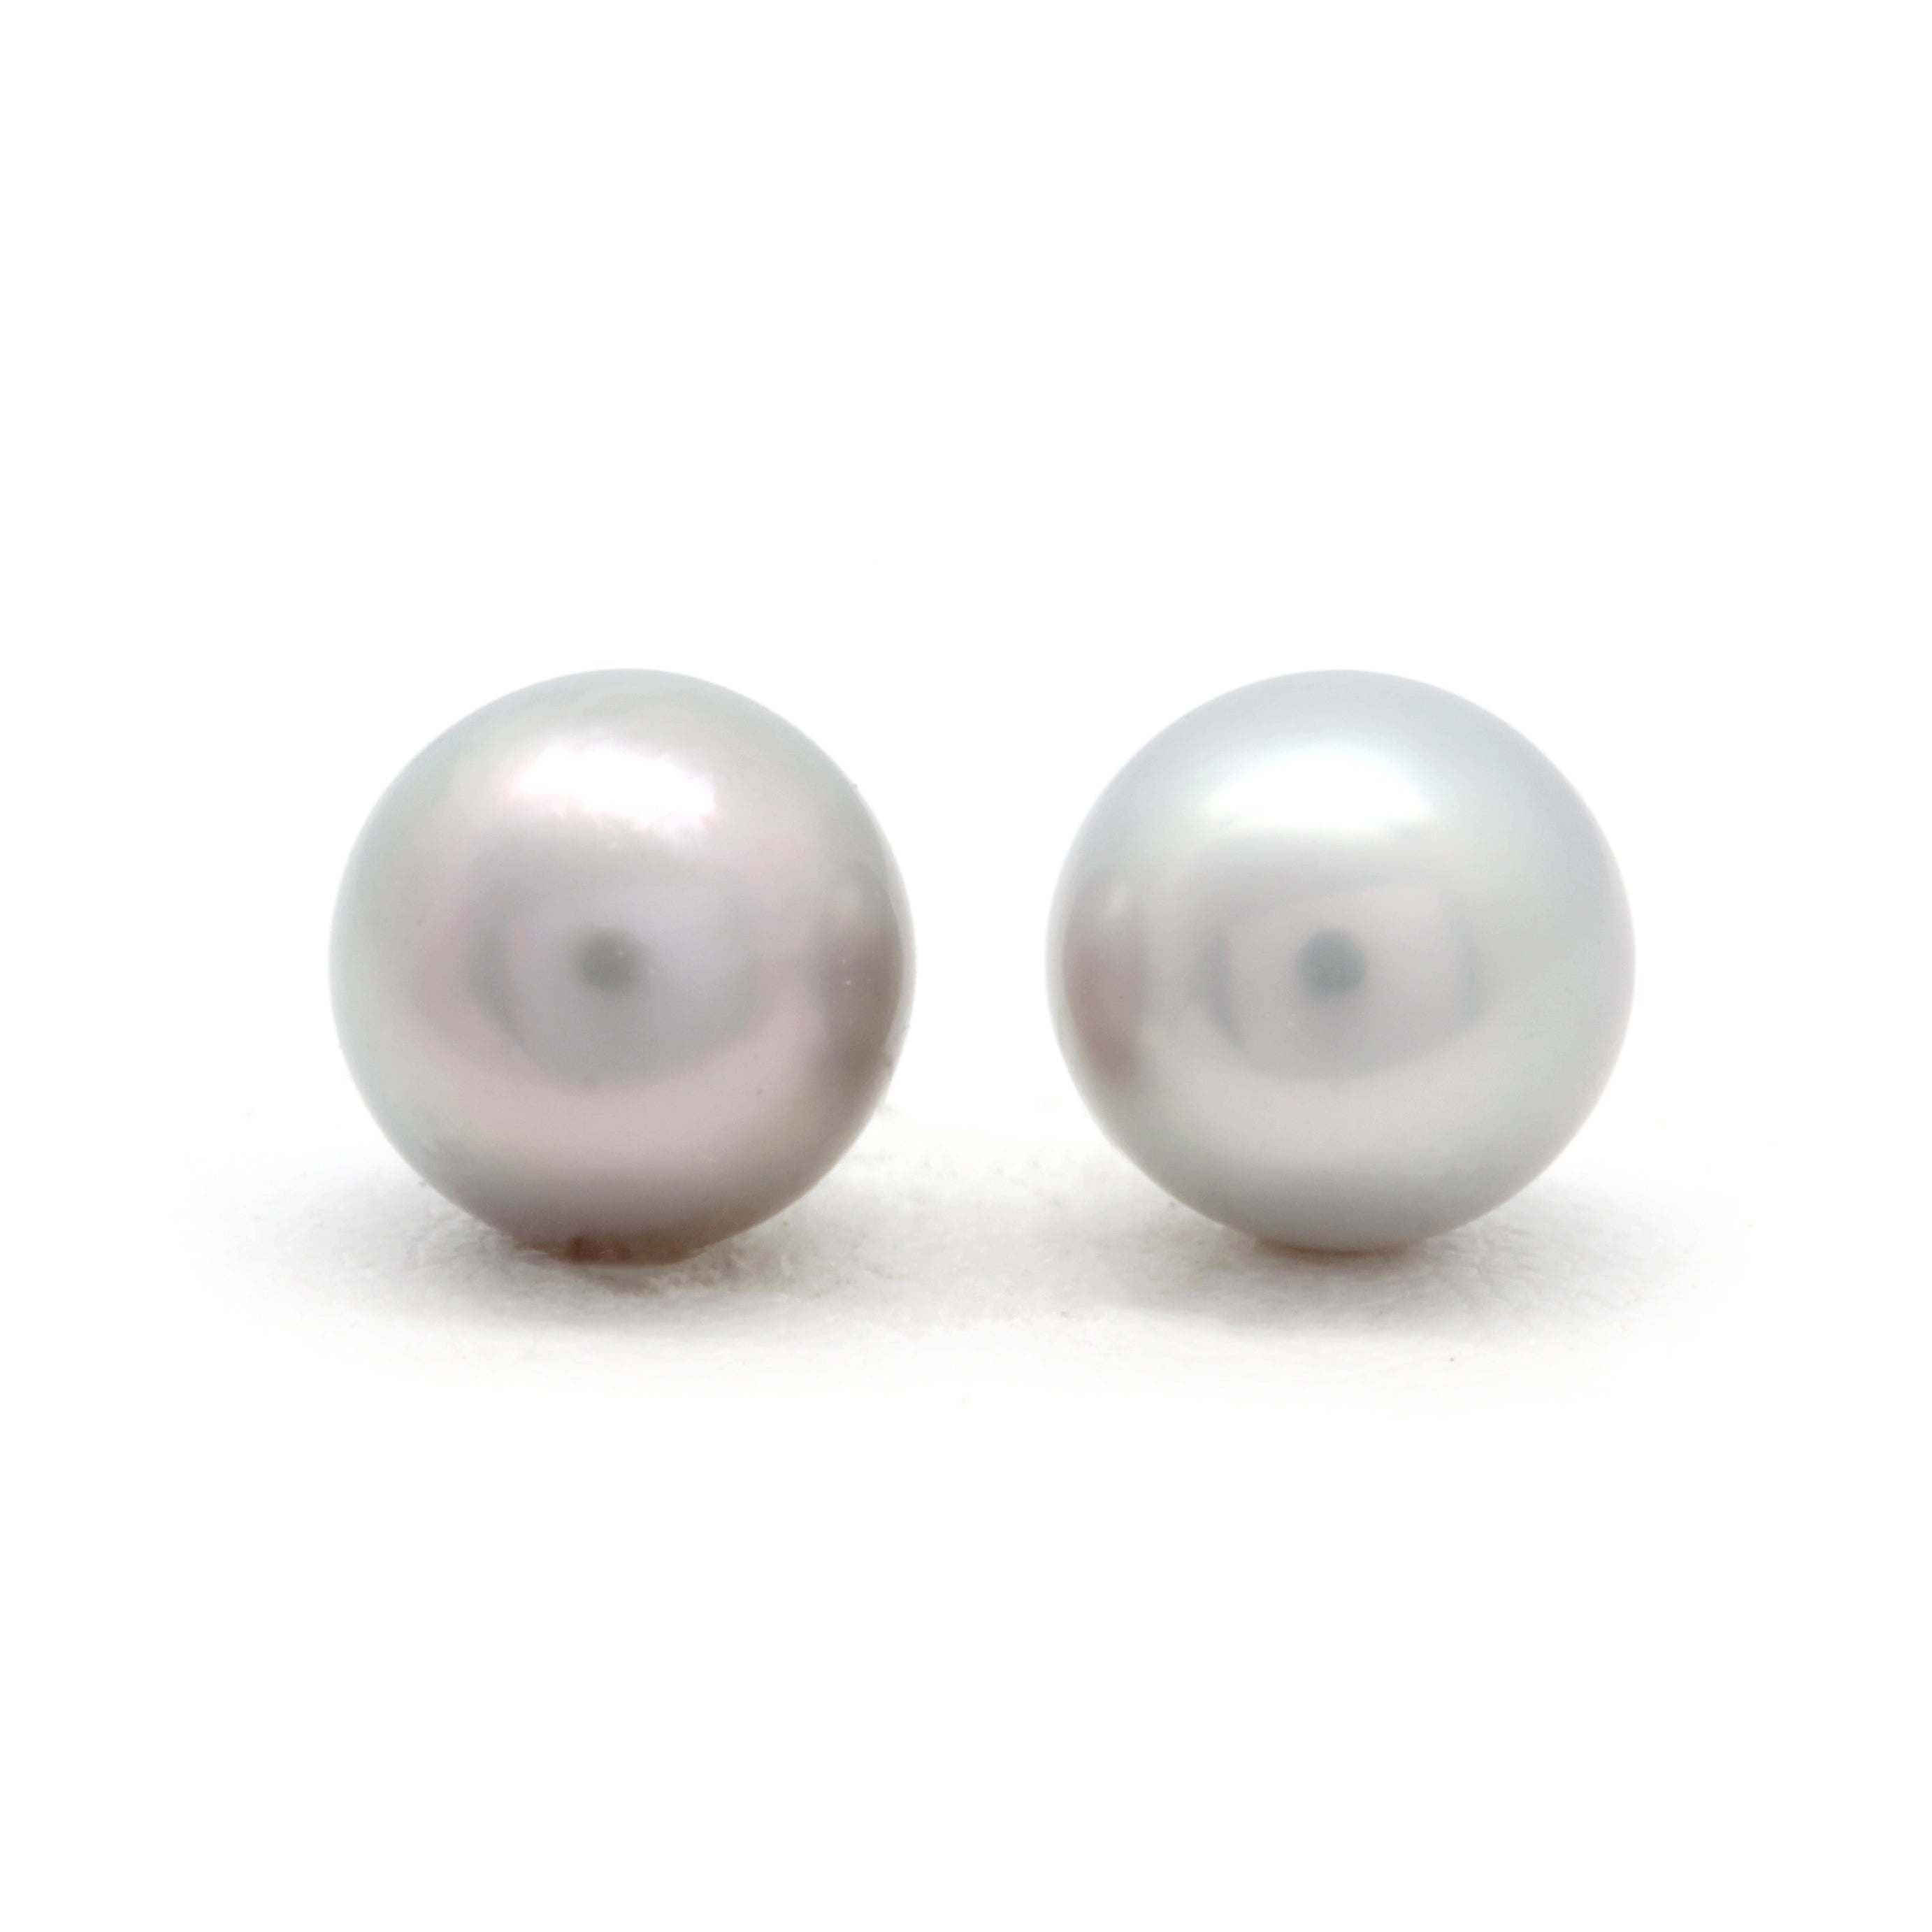 Pair of 8.4 mm Near-Round Cortez Pearls